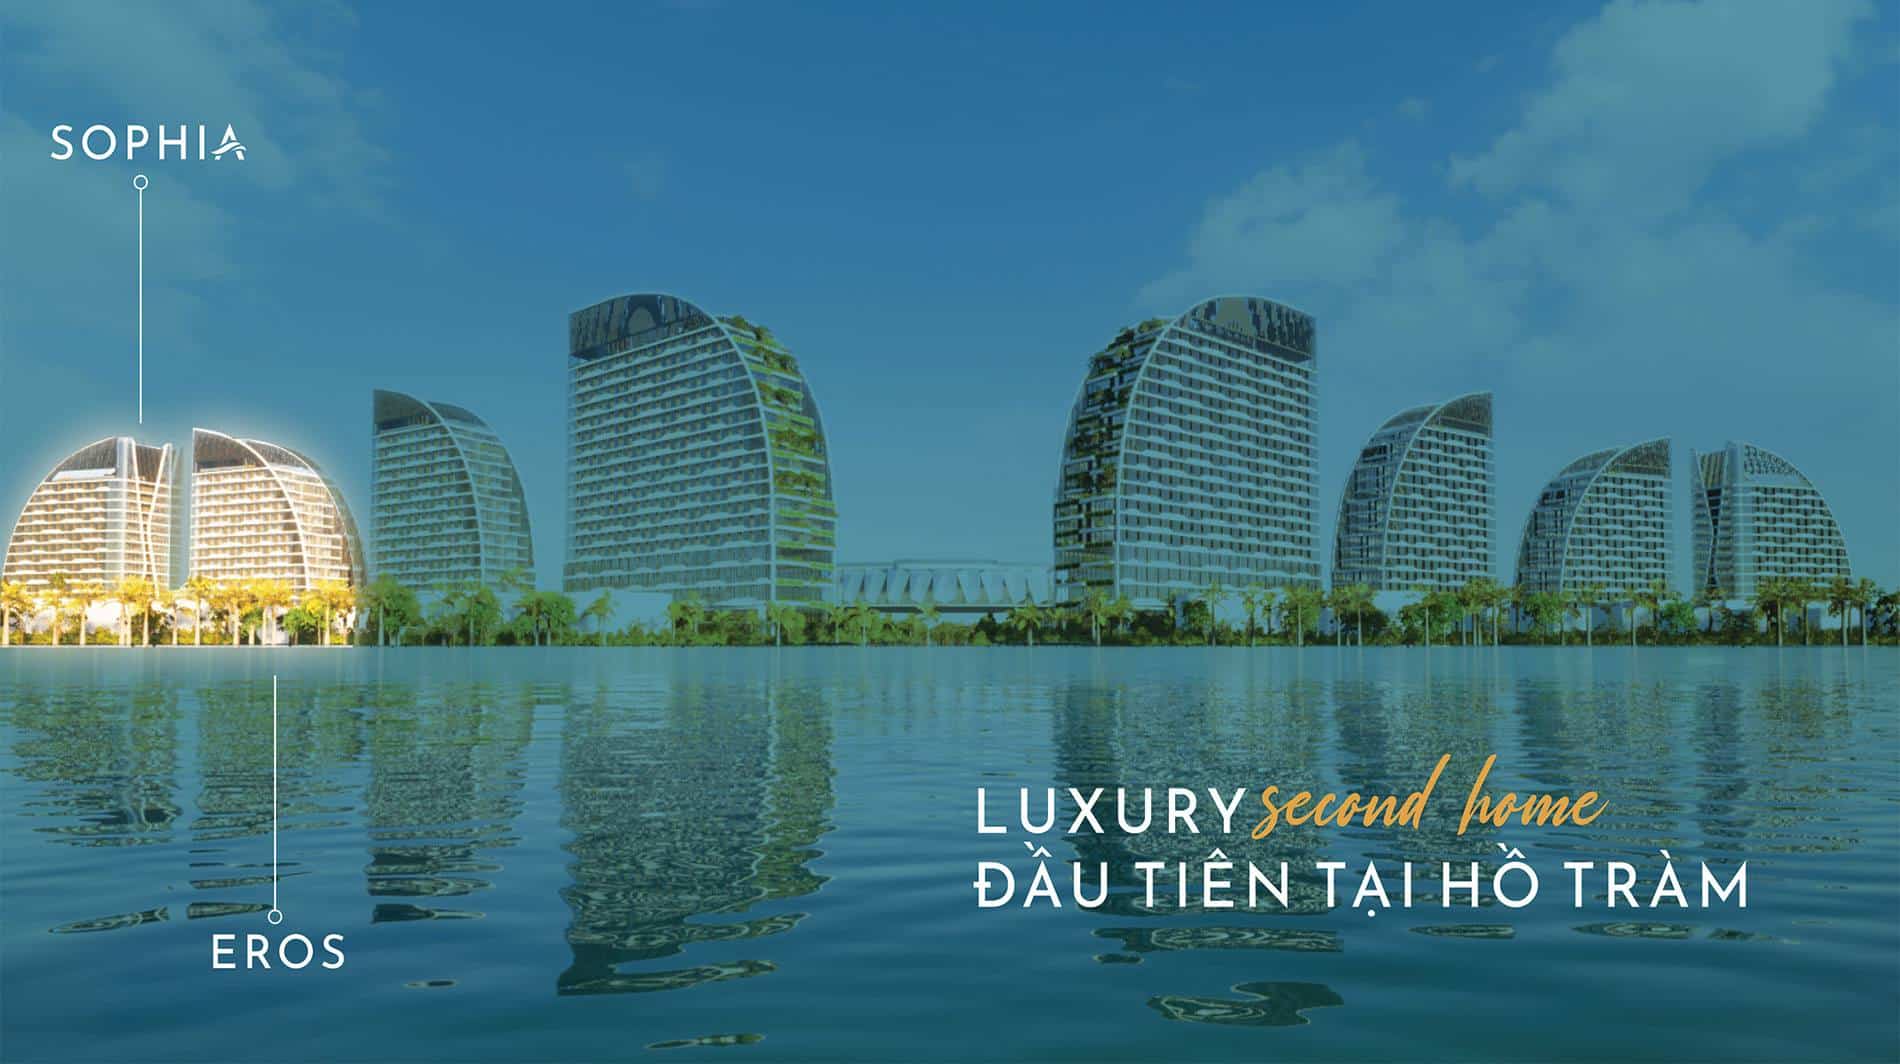 Căn hộ Luxury Second home đầu tiên tại Hồ Tràm thuộc phân khu The Sea Class.